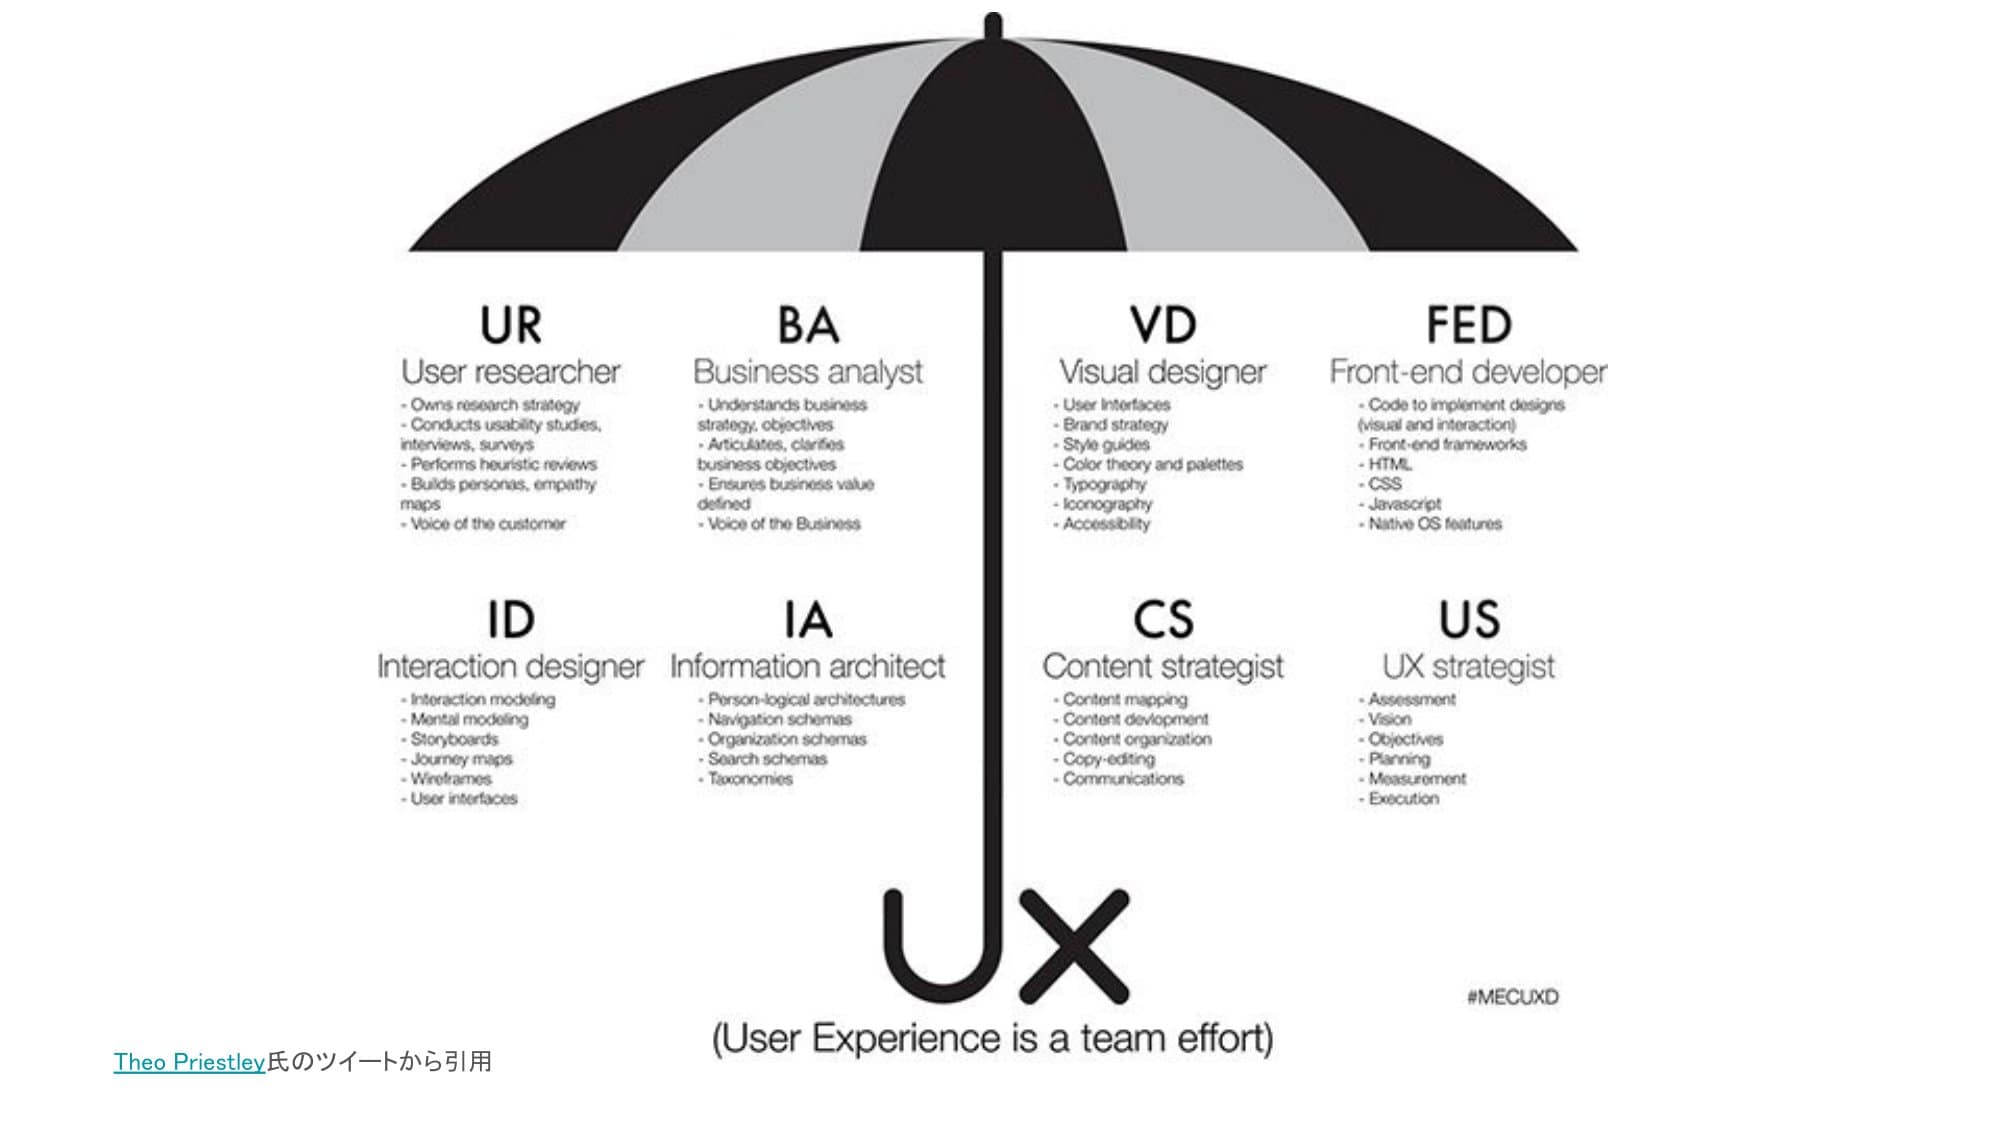 テオ・プリストリー氏がX（旧Twitter）にポストしたUXデザインの関係者を構造化したアンブレラの図